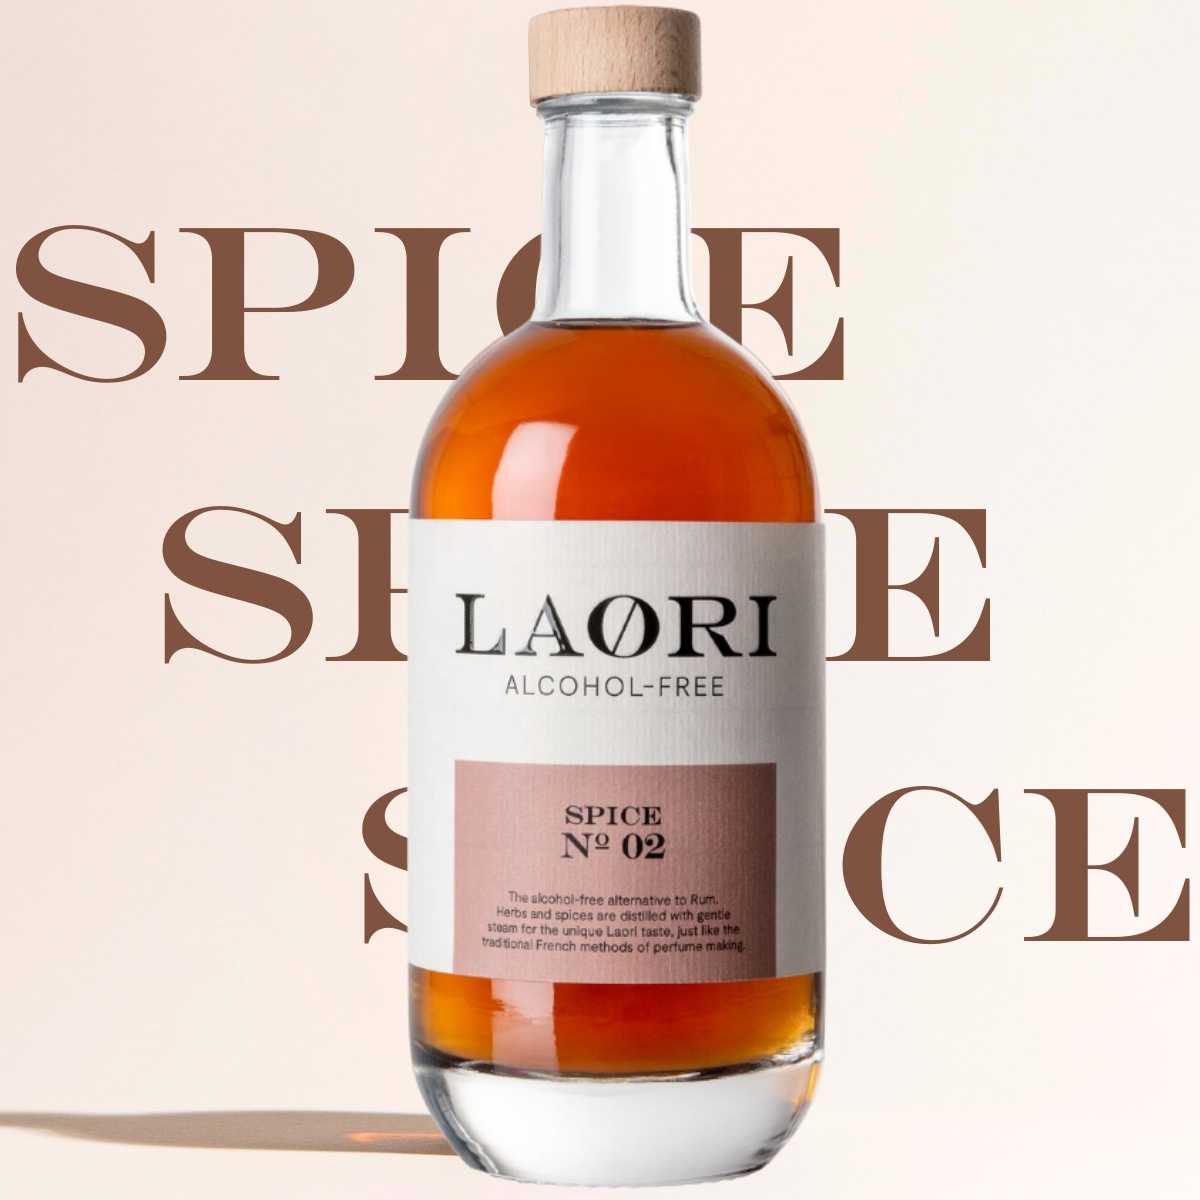 Have it all: 3x Laori Spice No 02 (0.5l) - value set